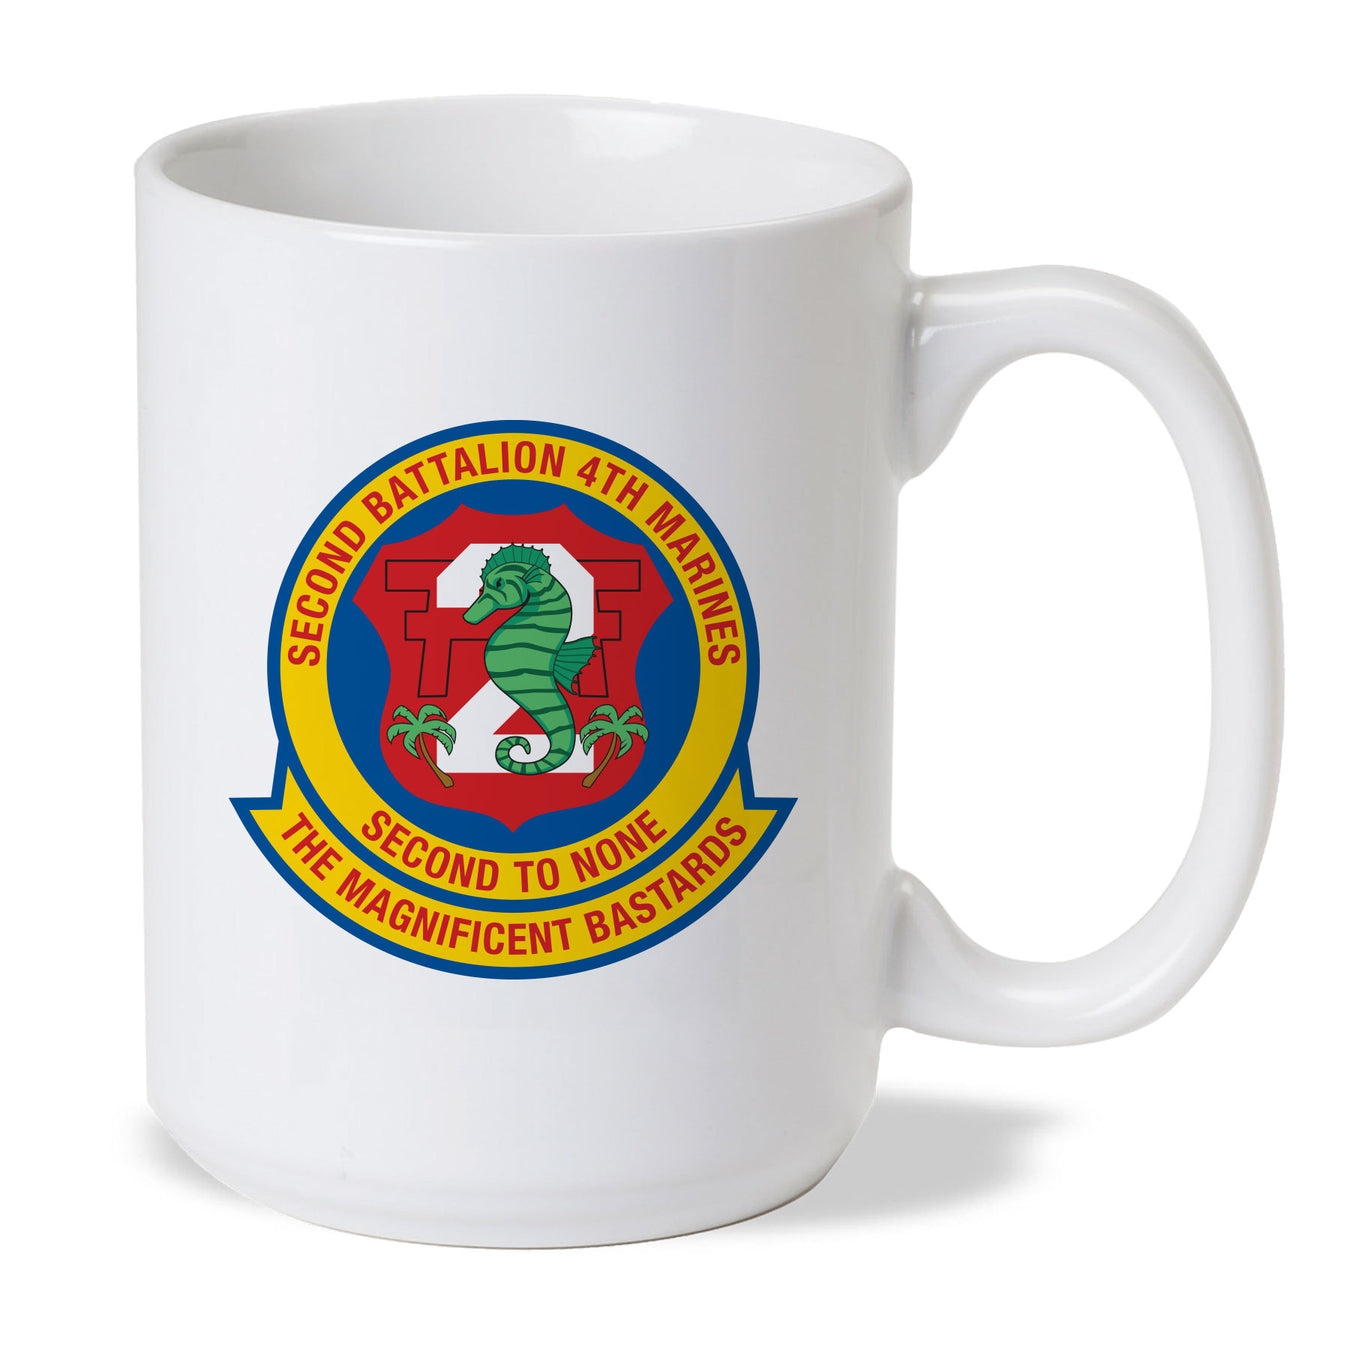 2nd Battalion 4TH Marines Coffee Mug - SGT GRIT